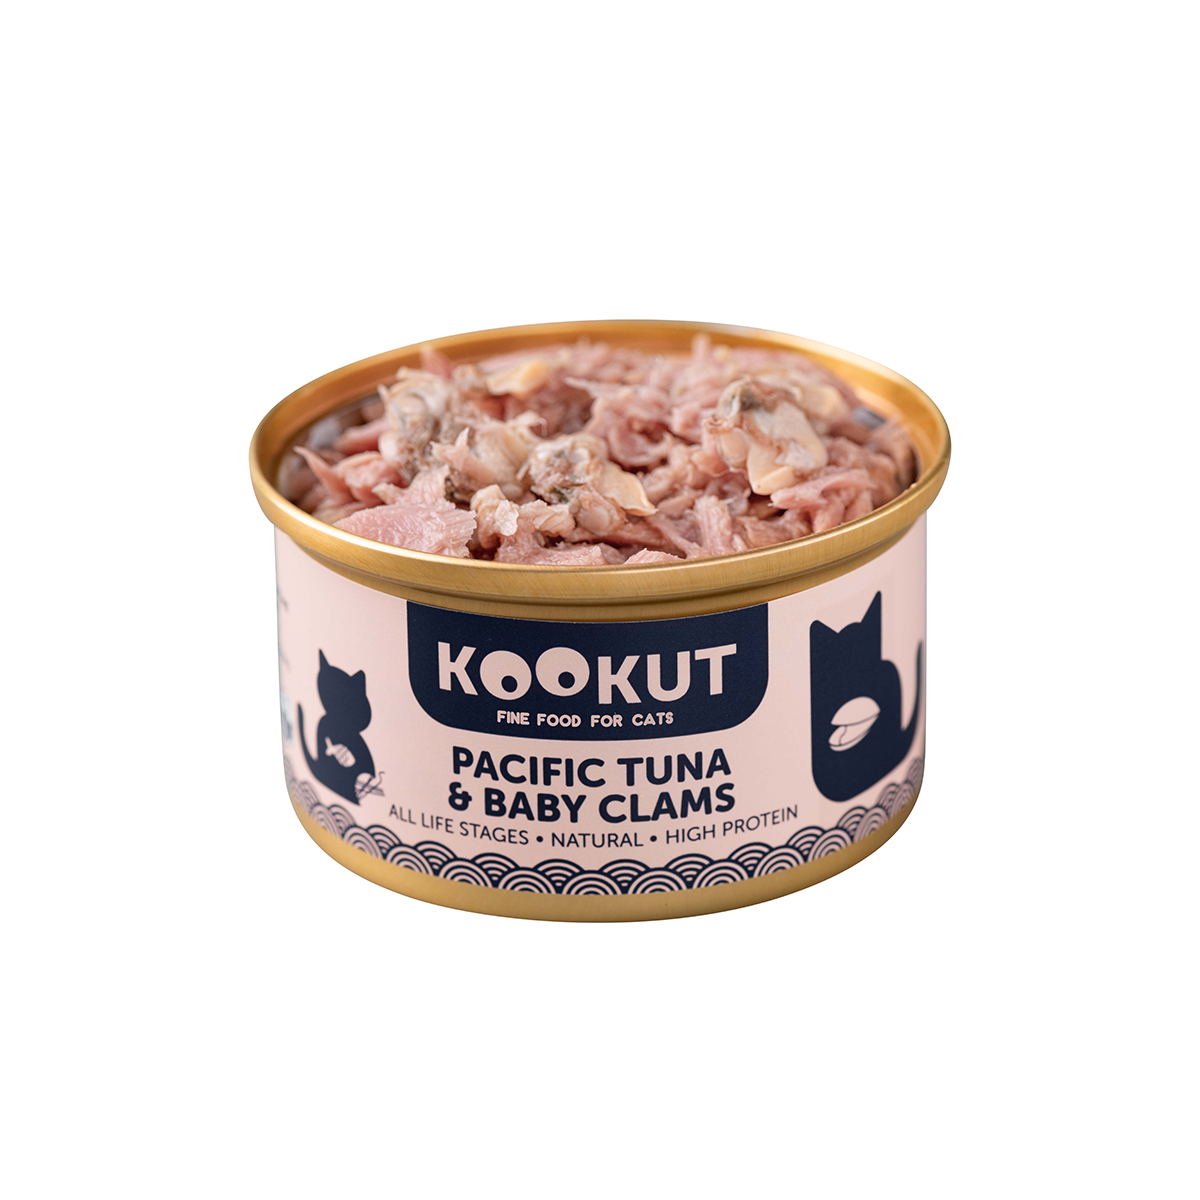 Pacific Tuna & Baby Clams - Natural